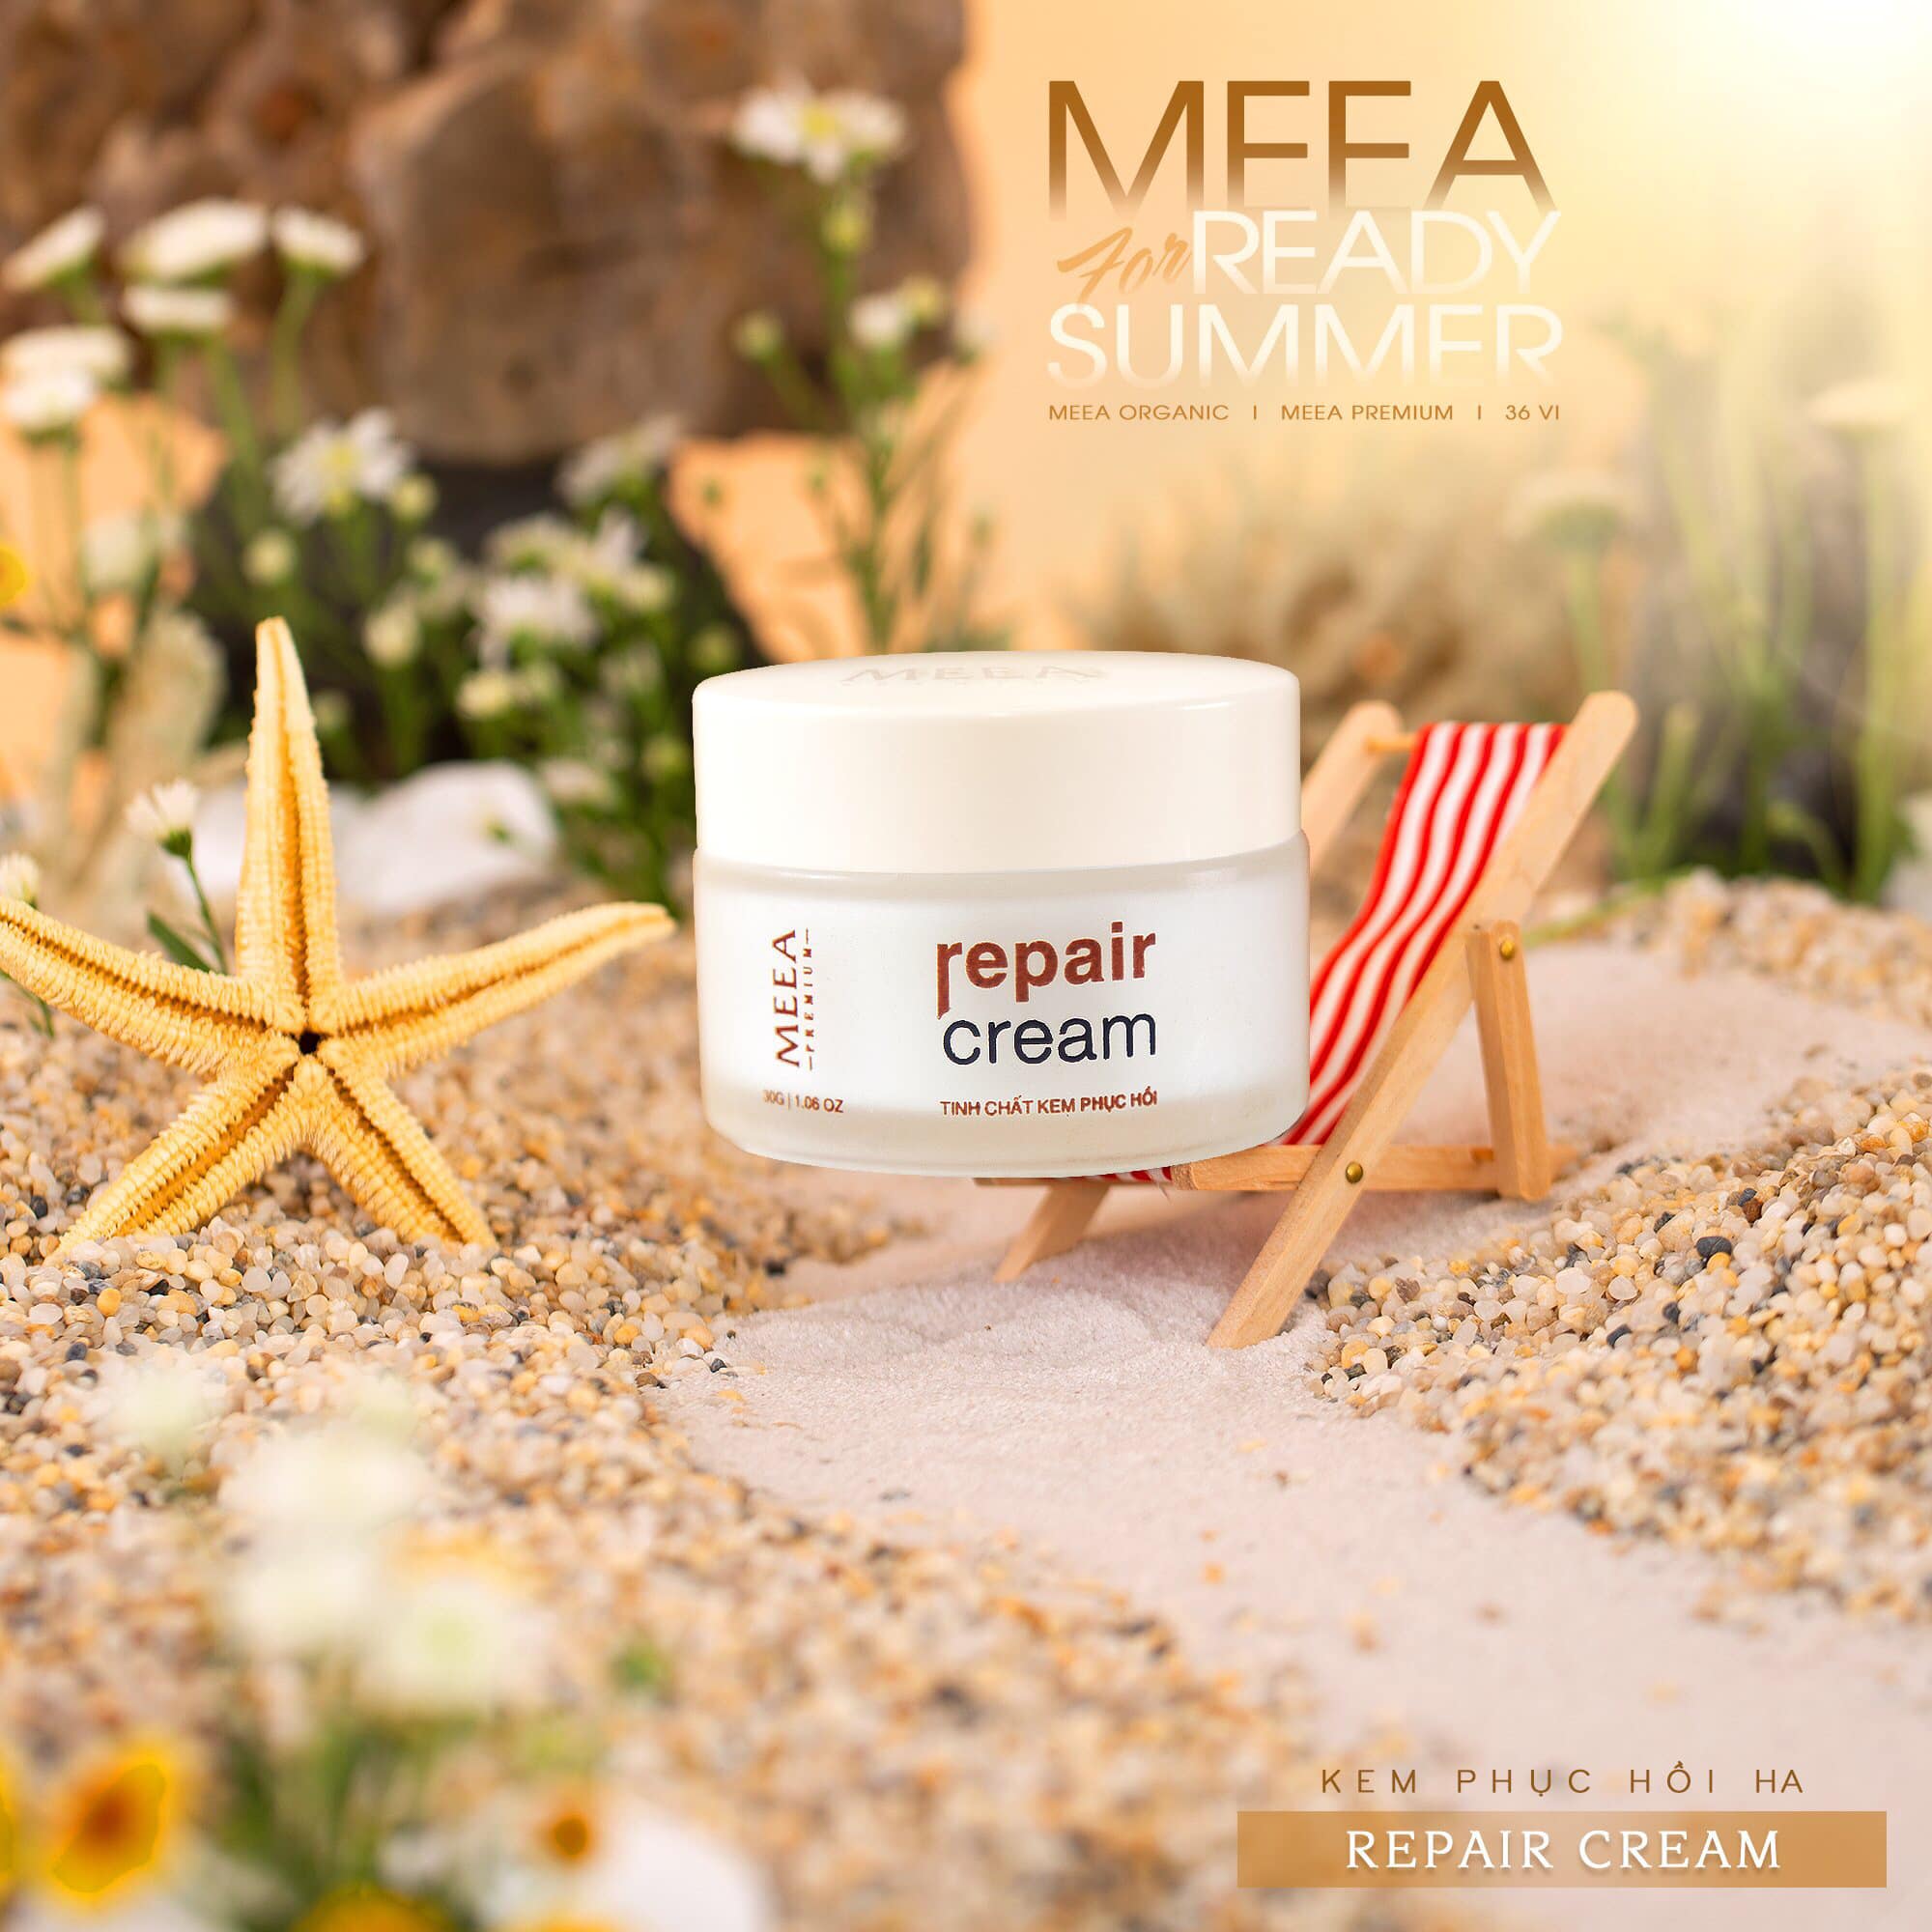 Kem phục hồi HA của mỹ phẩm Meea Organic - tan vào da nhanh chóng